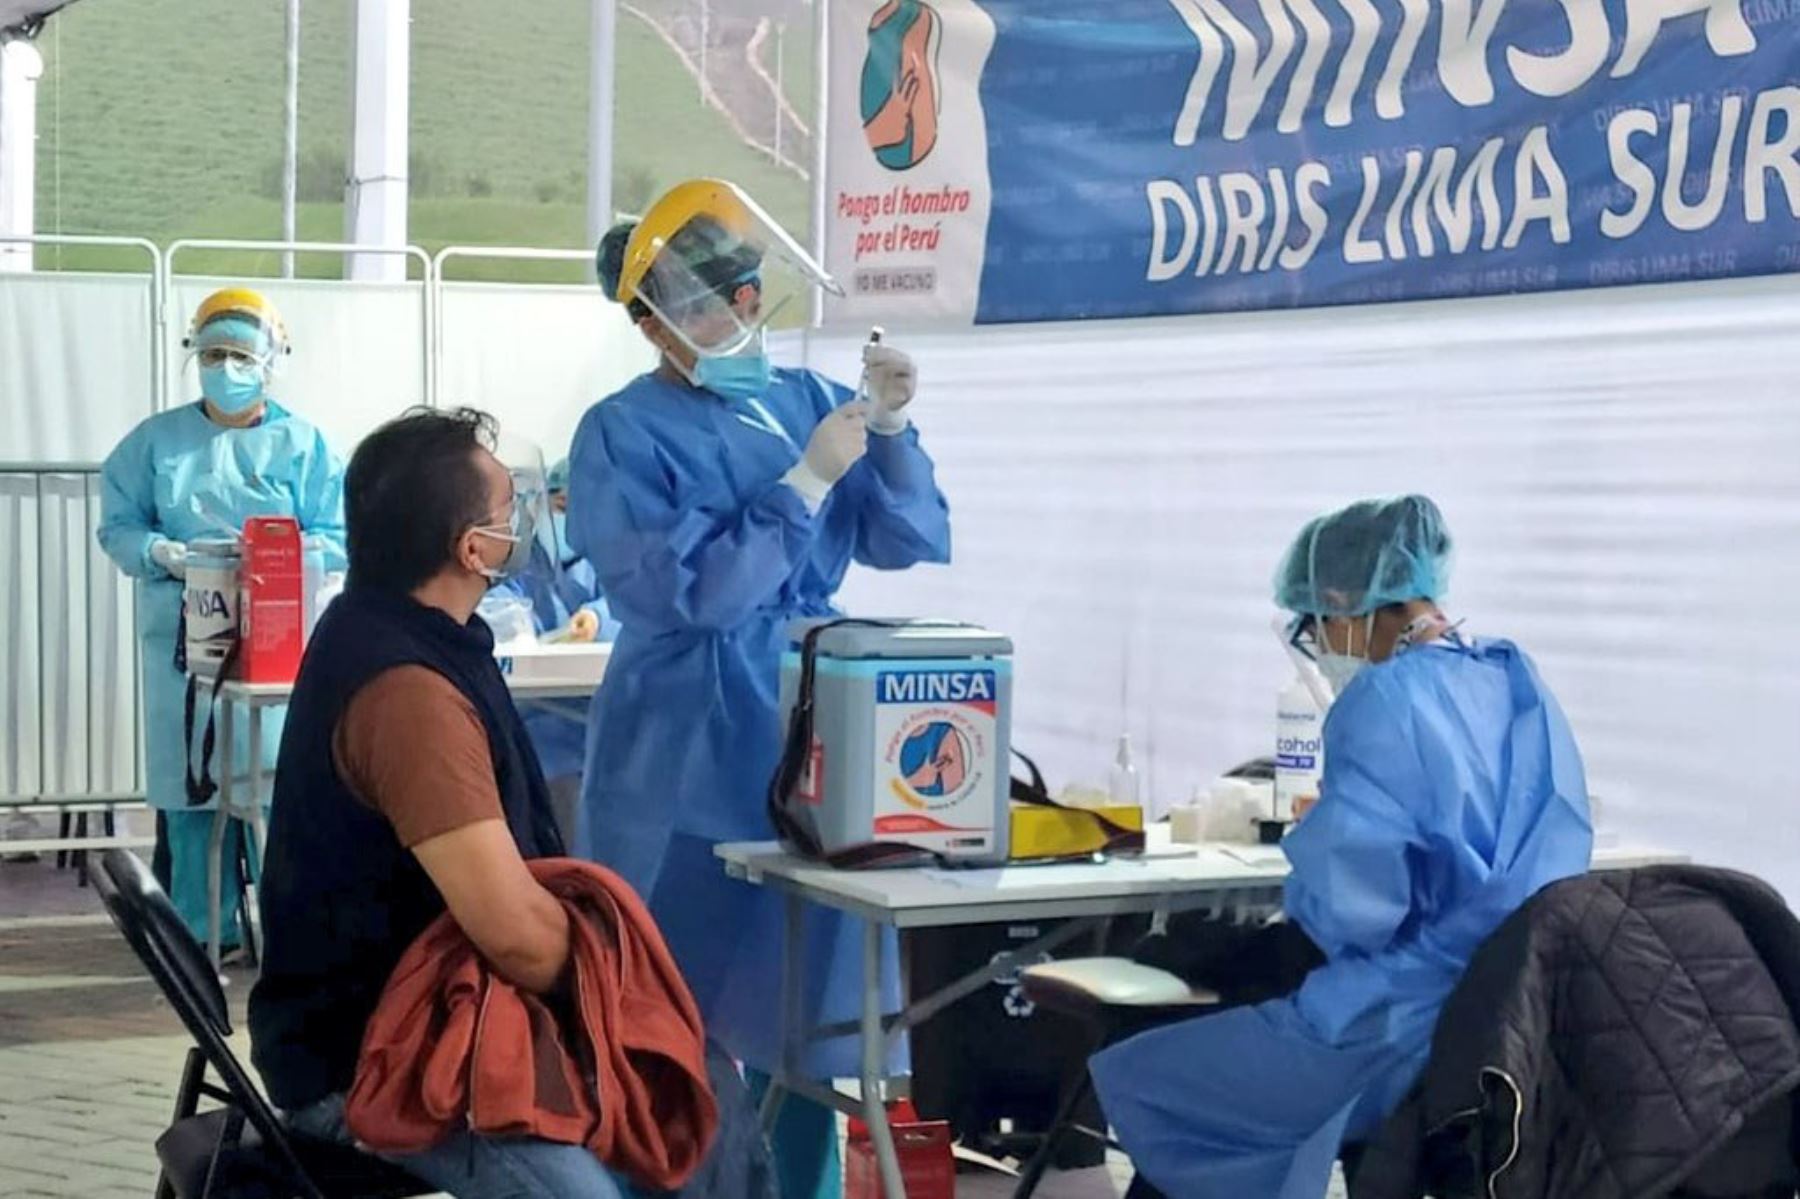 Empezó la primera jornada del Vacunatón contra la covid-19 en Lima Metropolitana y Callao. Hoy vacunan a los mayores de 47 años de manera ininterrumpida, incluyendo horario madrugada.
Foto: Minsa